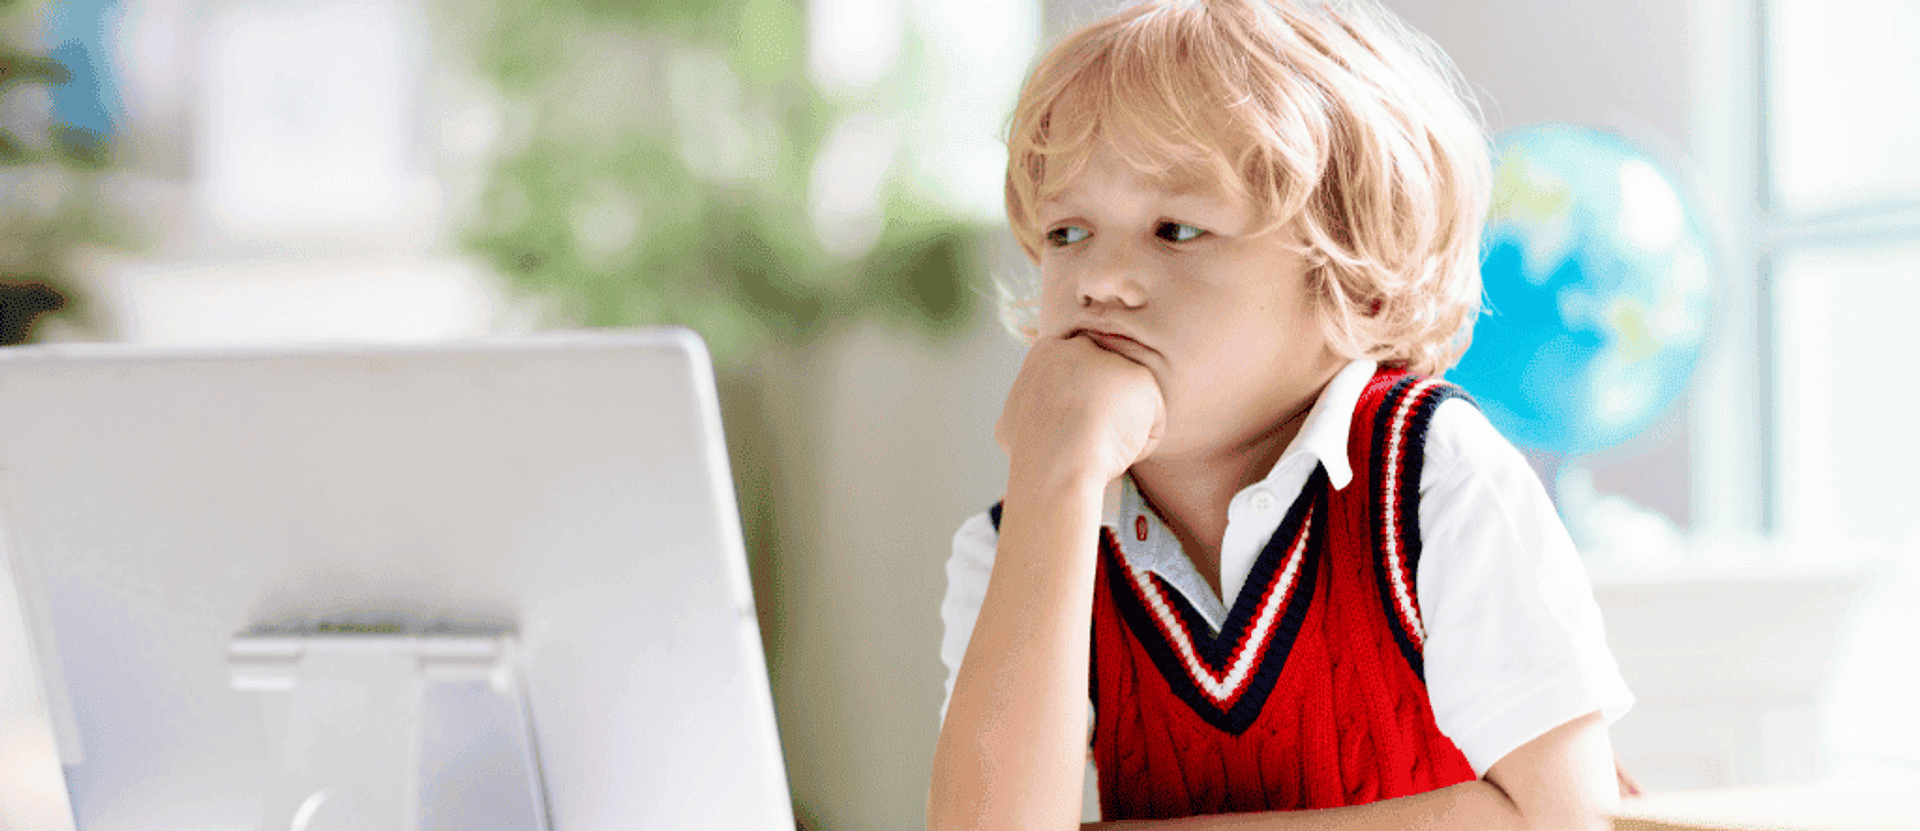 Chłopiec przed laptopem